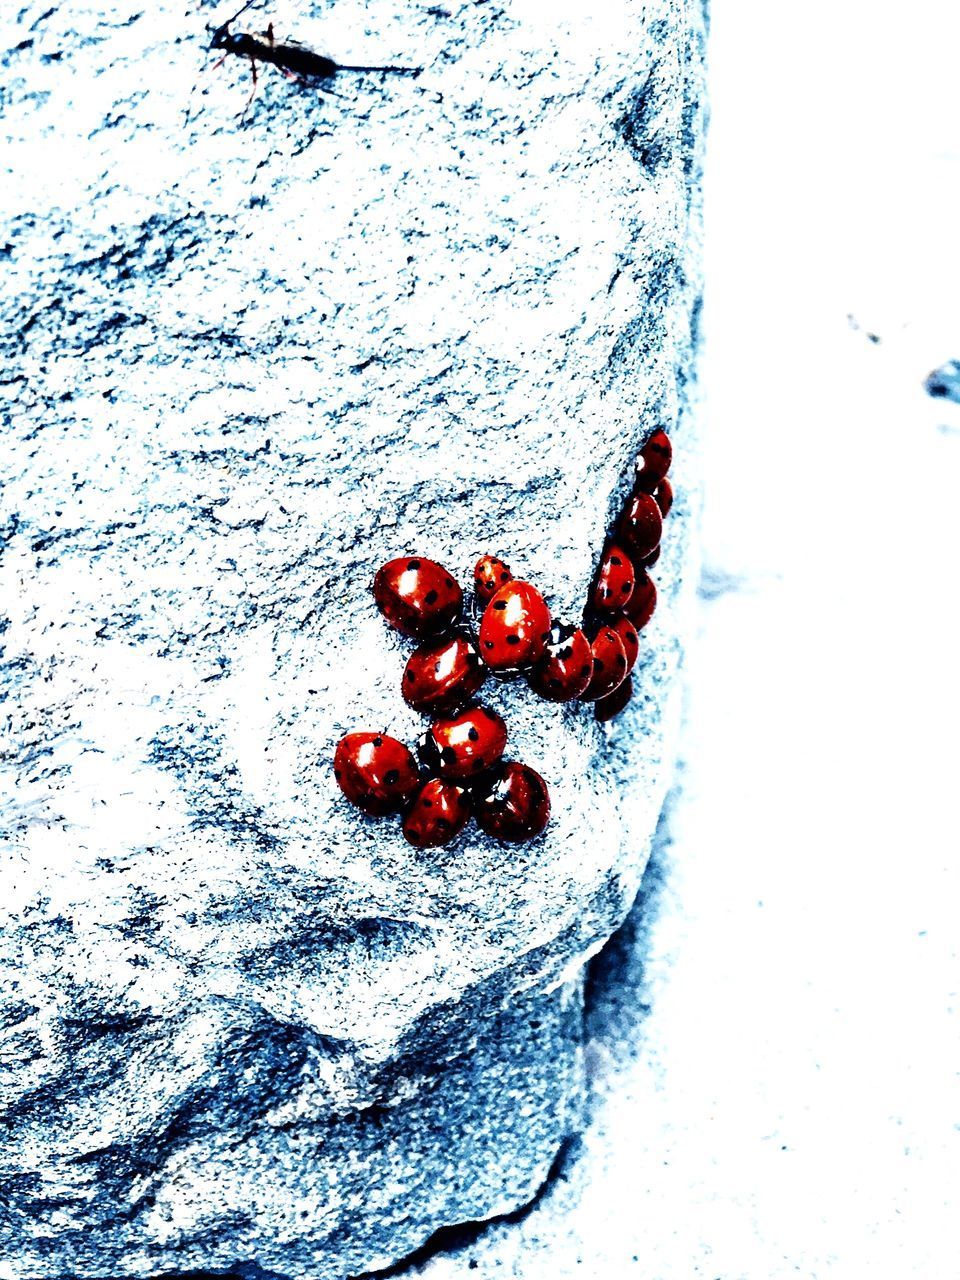 HIGH ANGLE VIEW OF LADYBUG ON SNOW COVERED